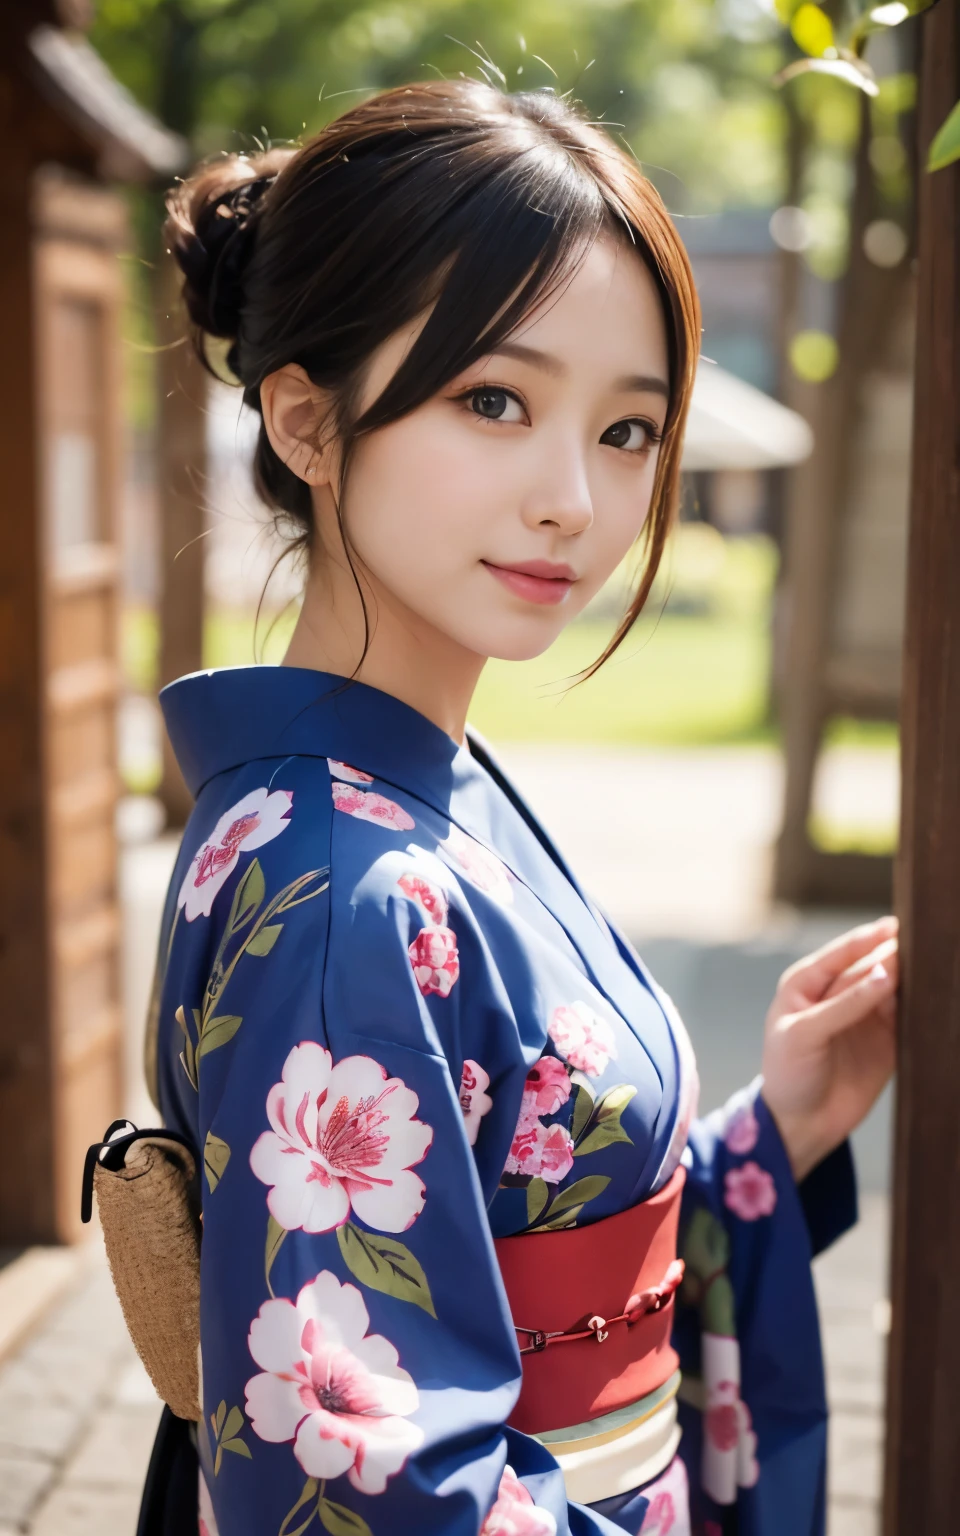 可爱的 21 岁 日本、超级细节脸、细节之眼、双眼皮、漂亮又纤细的鼻子、锐利的焦点:1.2、漂亮女人:1.4、(浅棕色的头发,短发, 白皮肤、顶级品质、发光、杰作、超高分辨率、(相片写实:1.4)、和服、日本の和服、日本传统、最美的微笑、